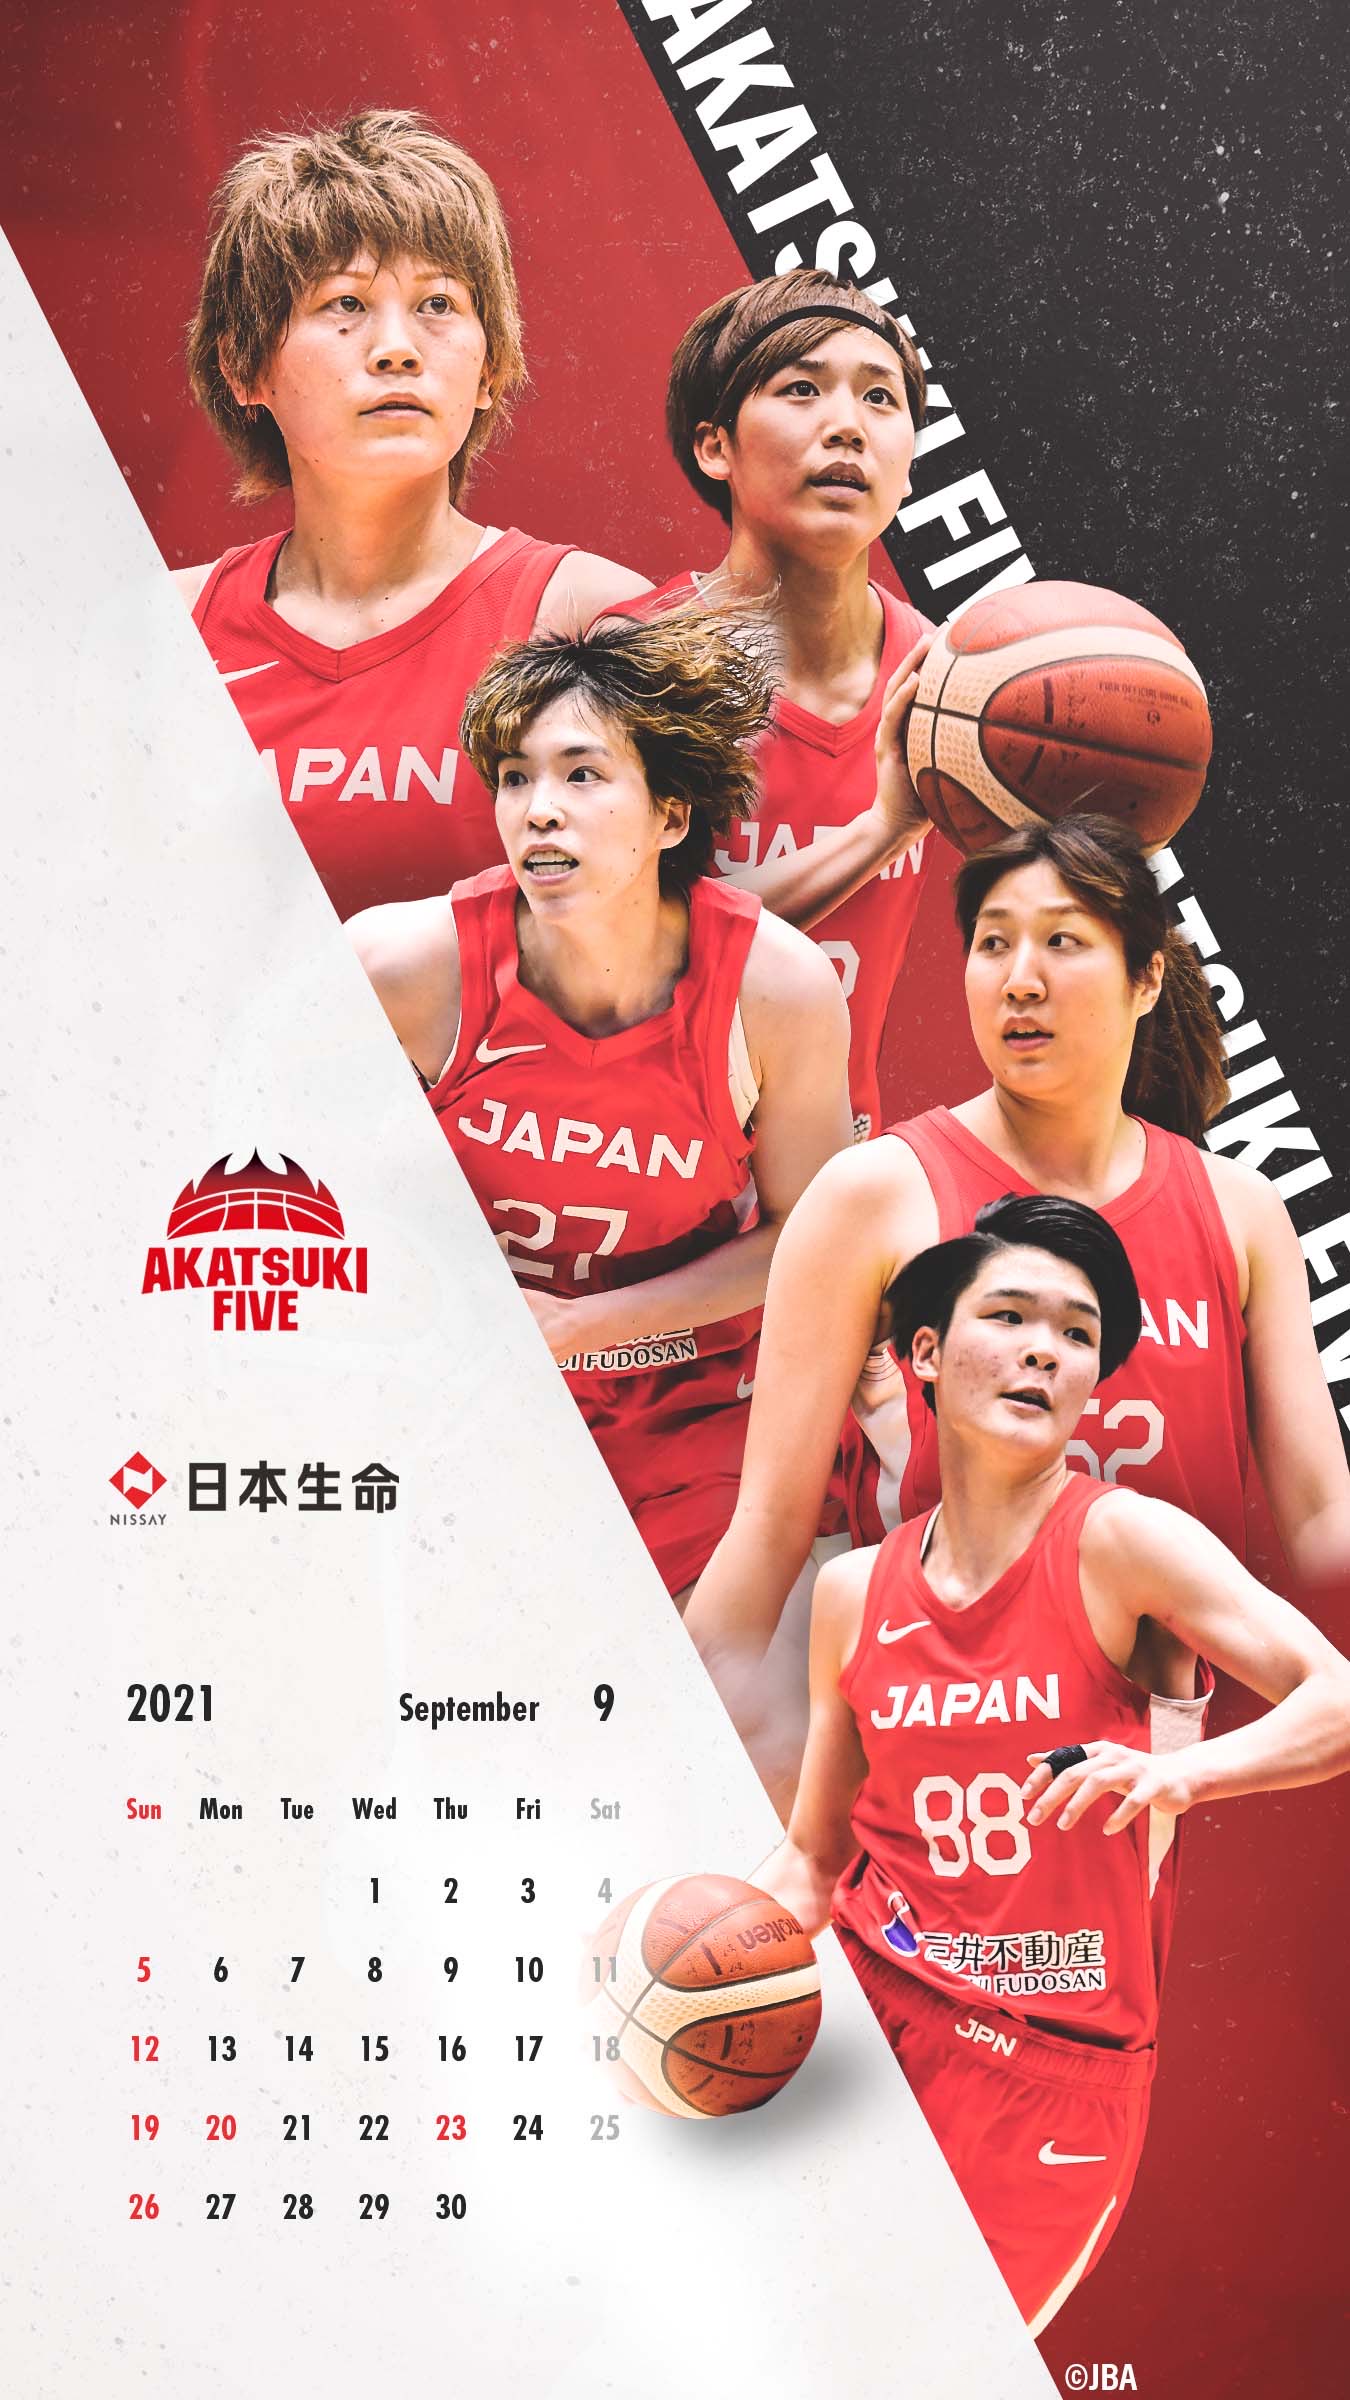 日本生命 Pa Twitter バスケ 日本代表 デジタルカレンダー 9月になりました 今月も カレンダー を作成しましたので是非ご活用ください Jba 壁紙 待受 バスケットボール Akatsukifive バスケ部 バスケ女子 日本生命 Playsupport バスケで日本を